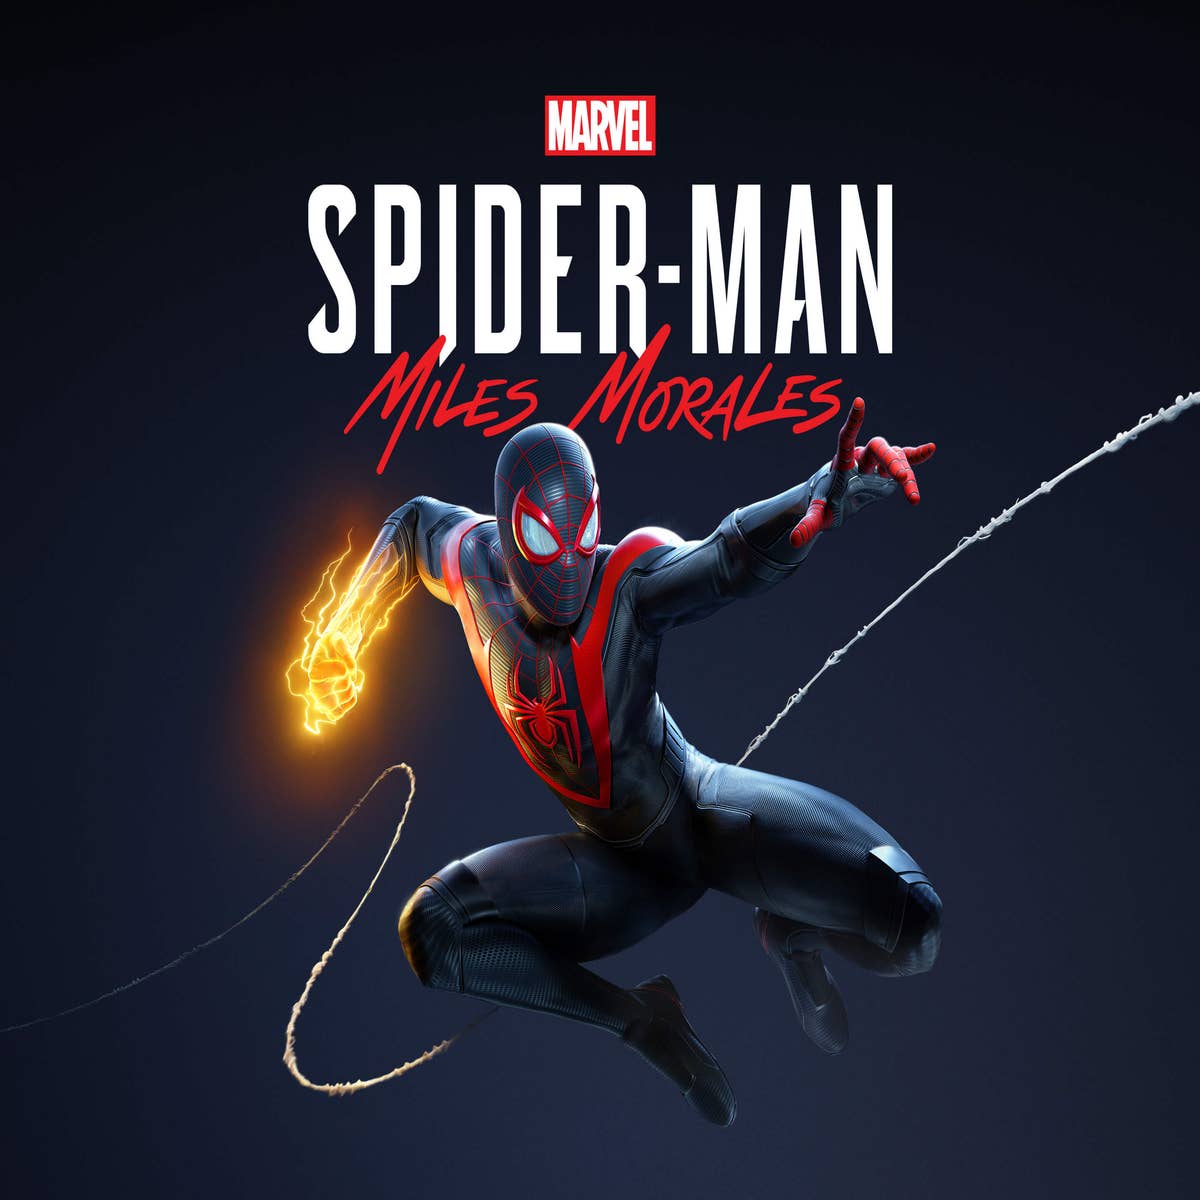 Jogos Spider-Man da Sony já venderam mais de 33 milhões de unidades